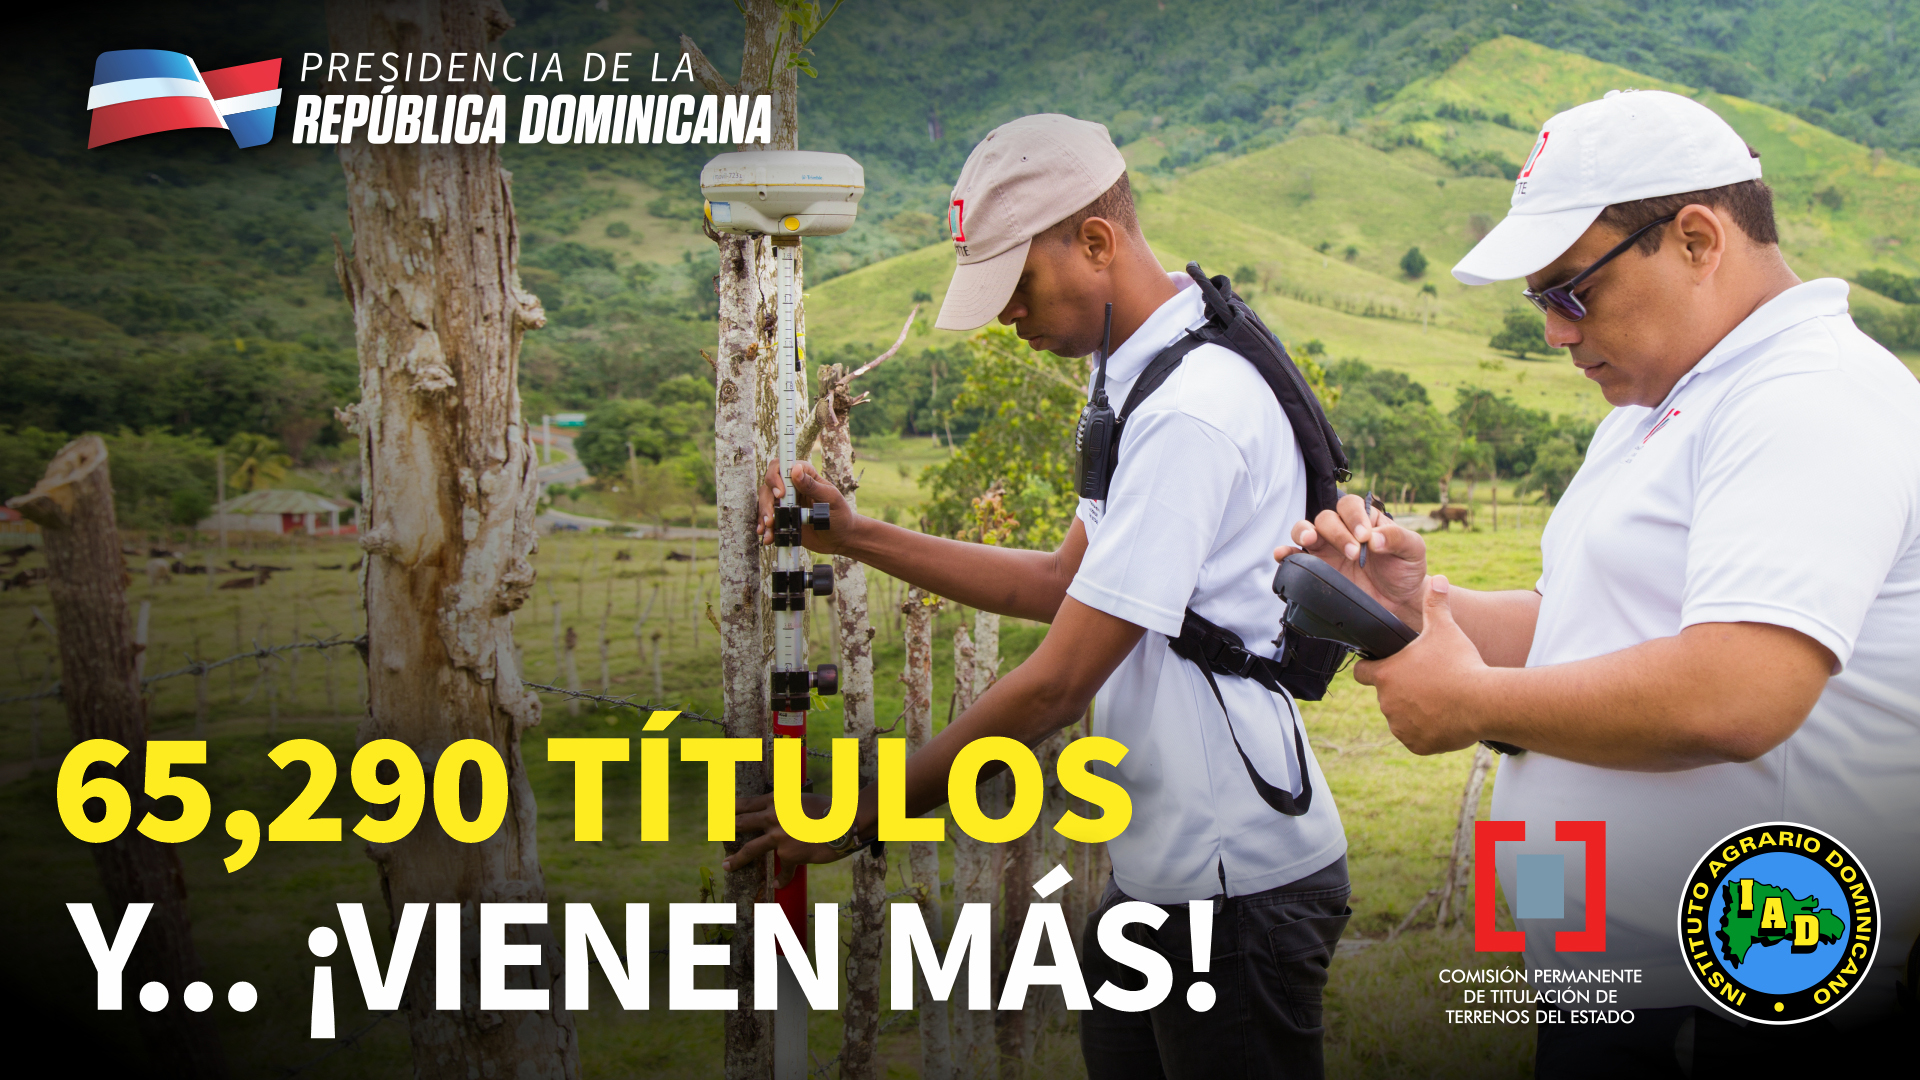 REPÚBLICA DOMINICANA: El gobierno ha obtenido y entregado 65,290 títulos de propiedad definitivos a nivel nacional.